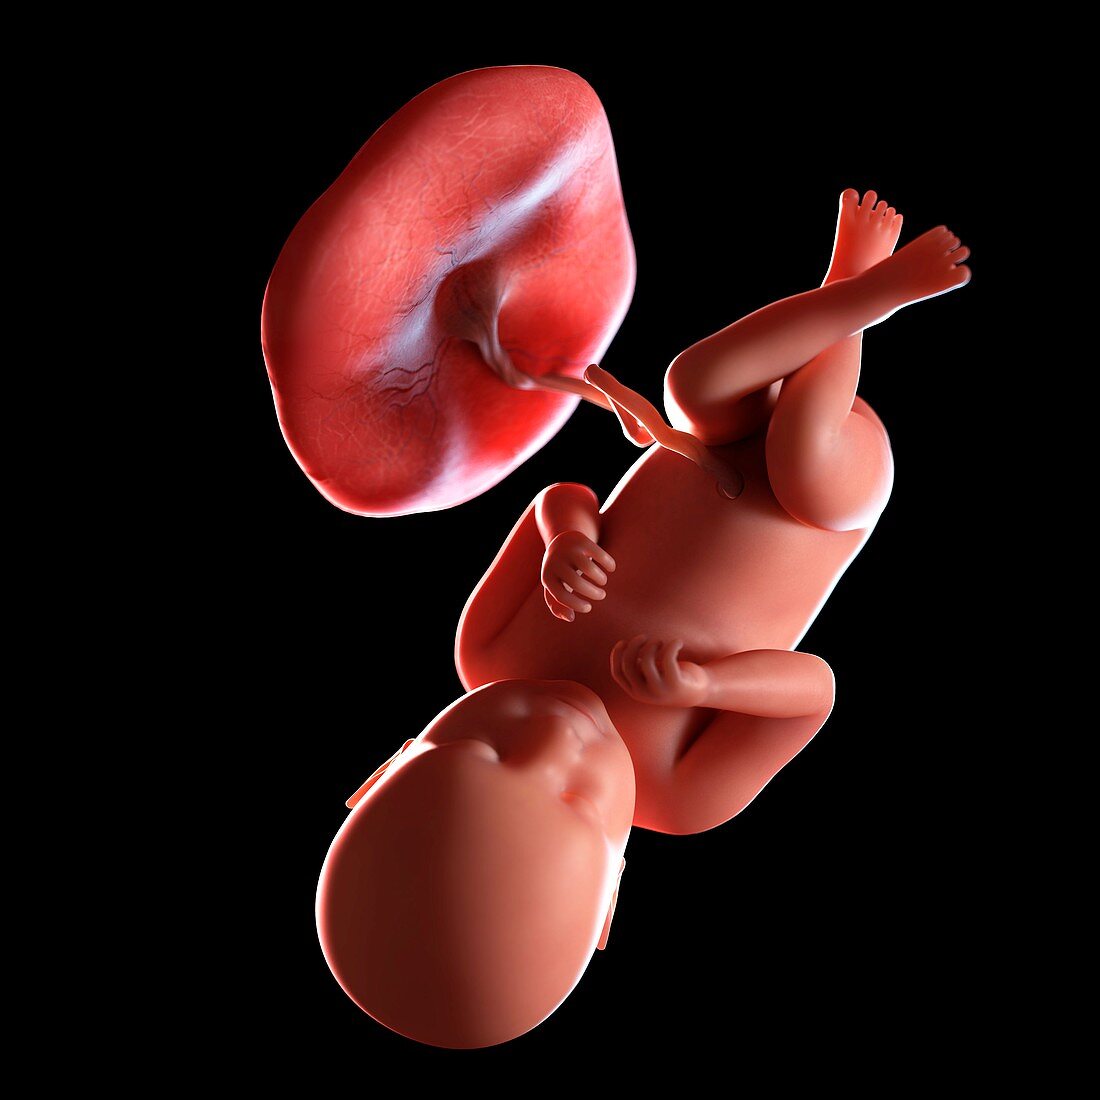 Human foetus age 39 weeks, illustration